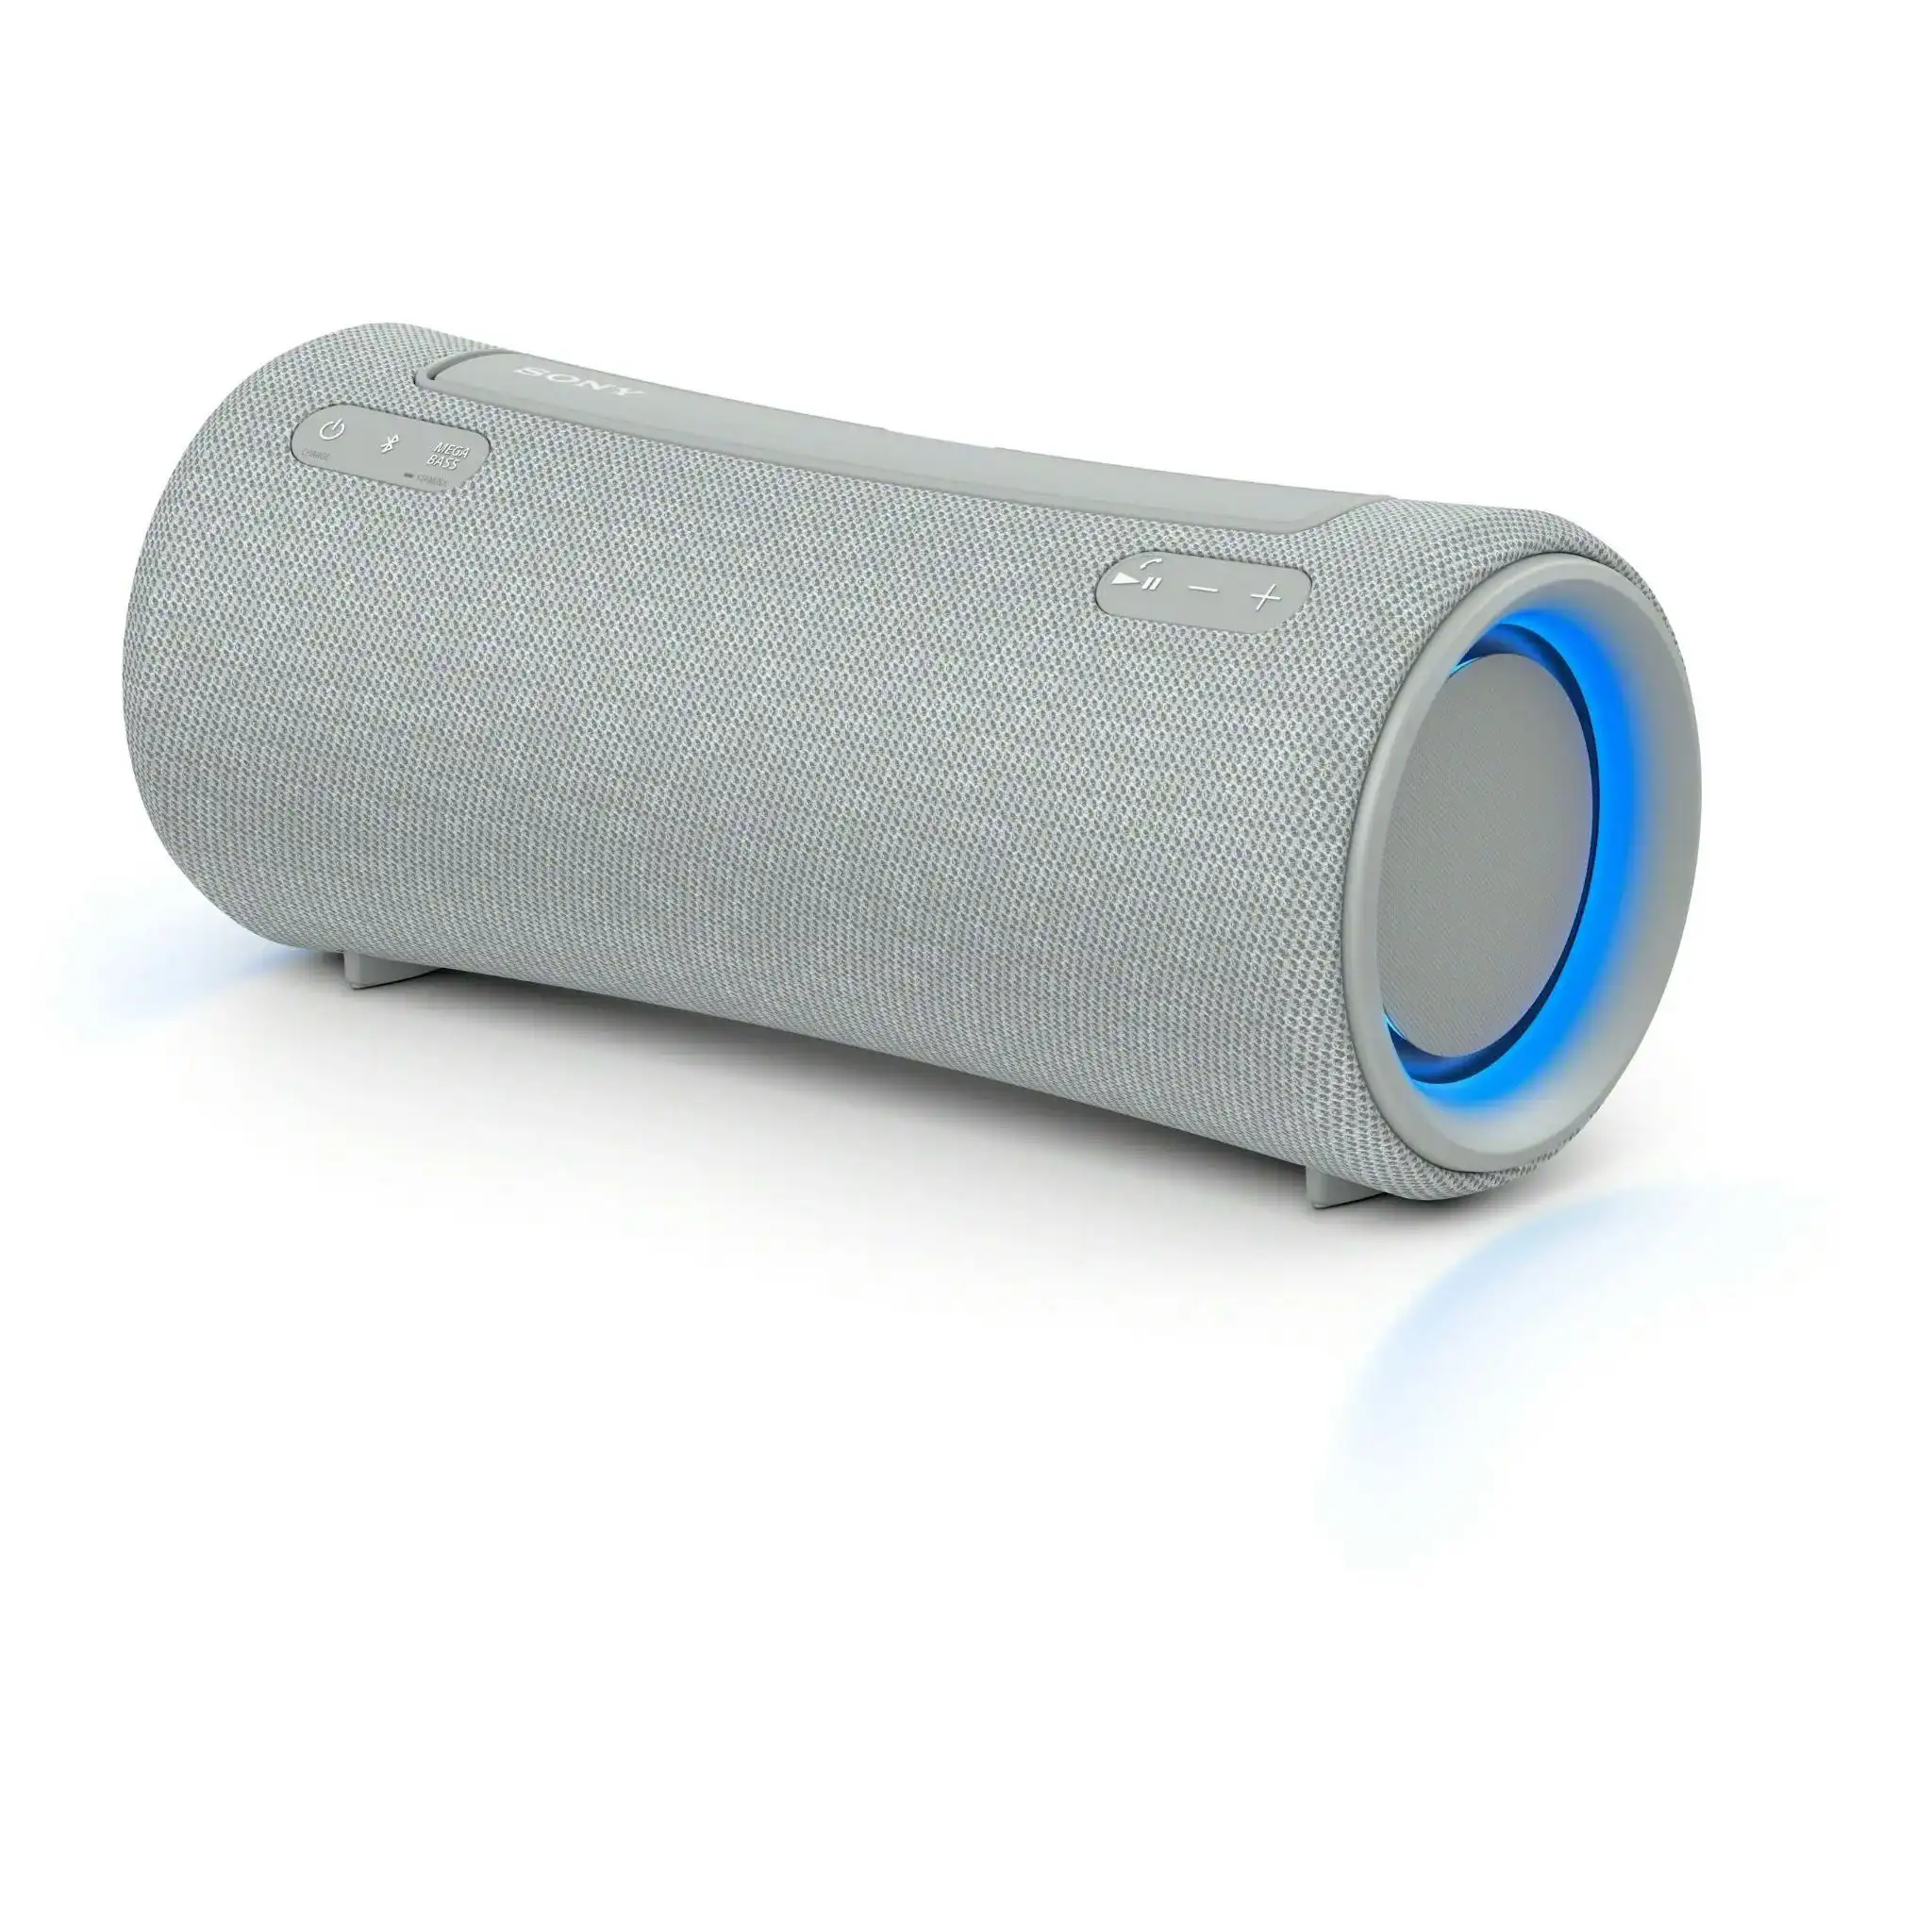 Sony Xg300 X-series Portable Wireless Speaker - Grey